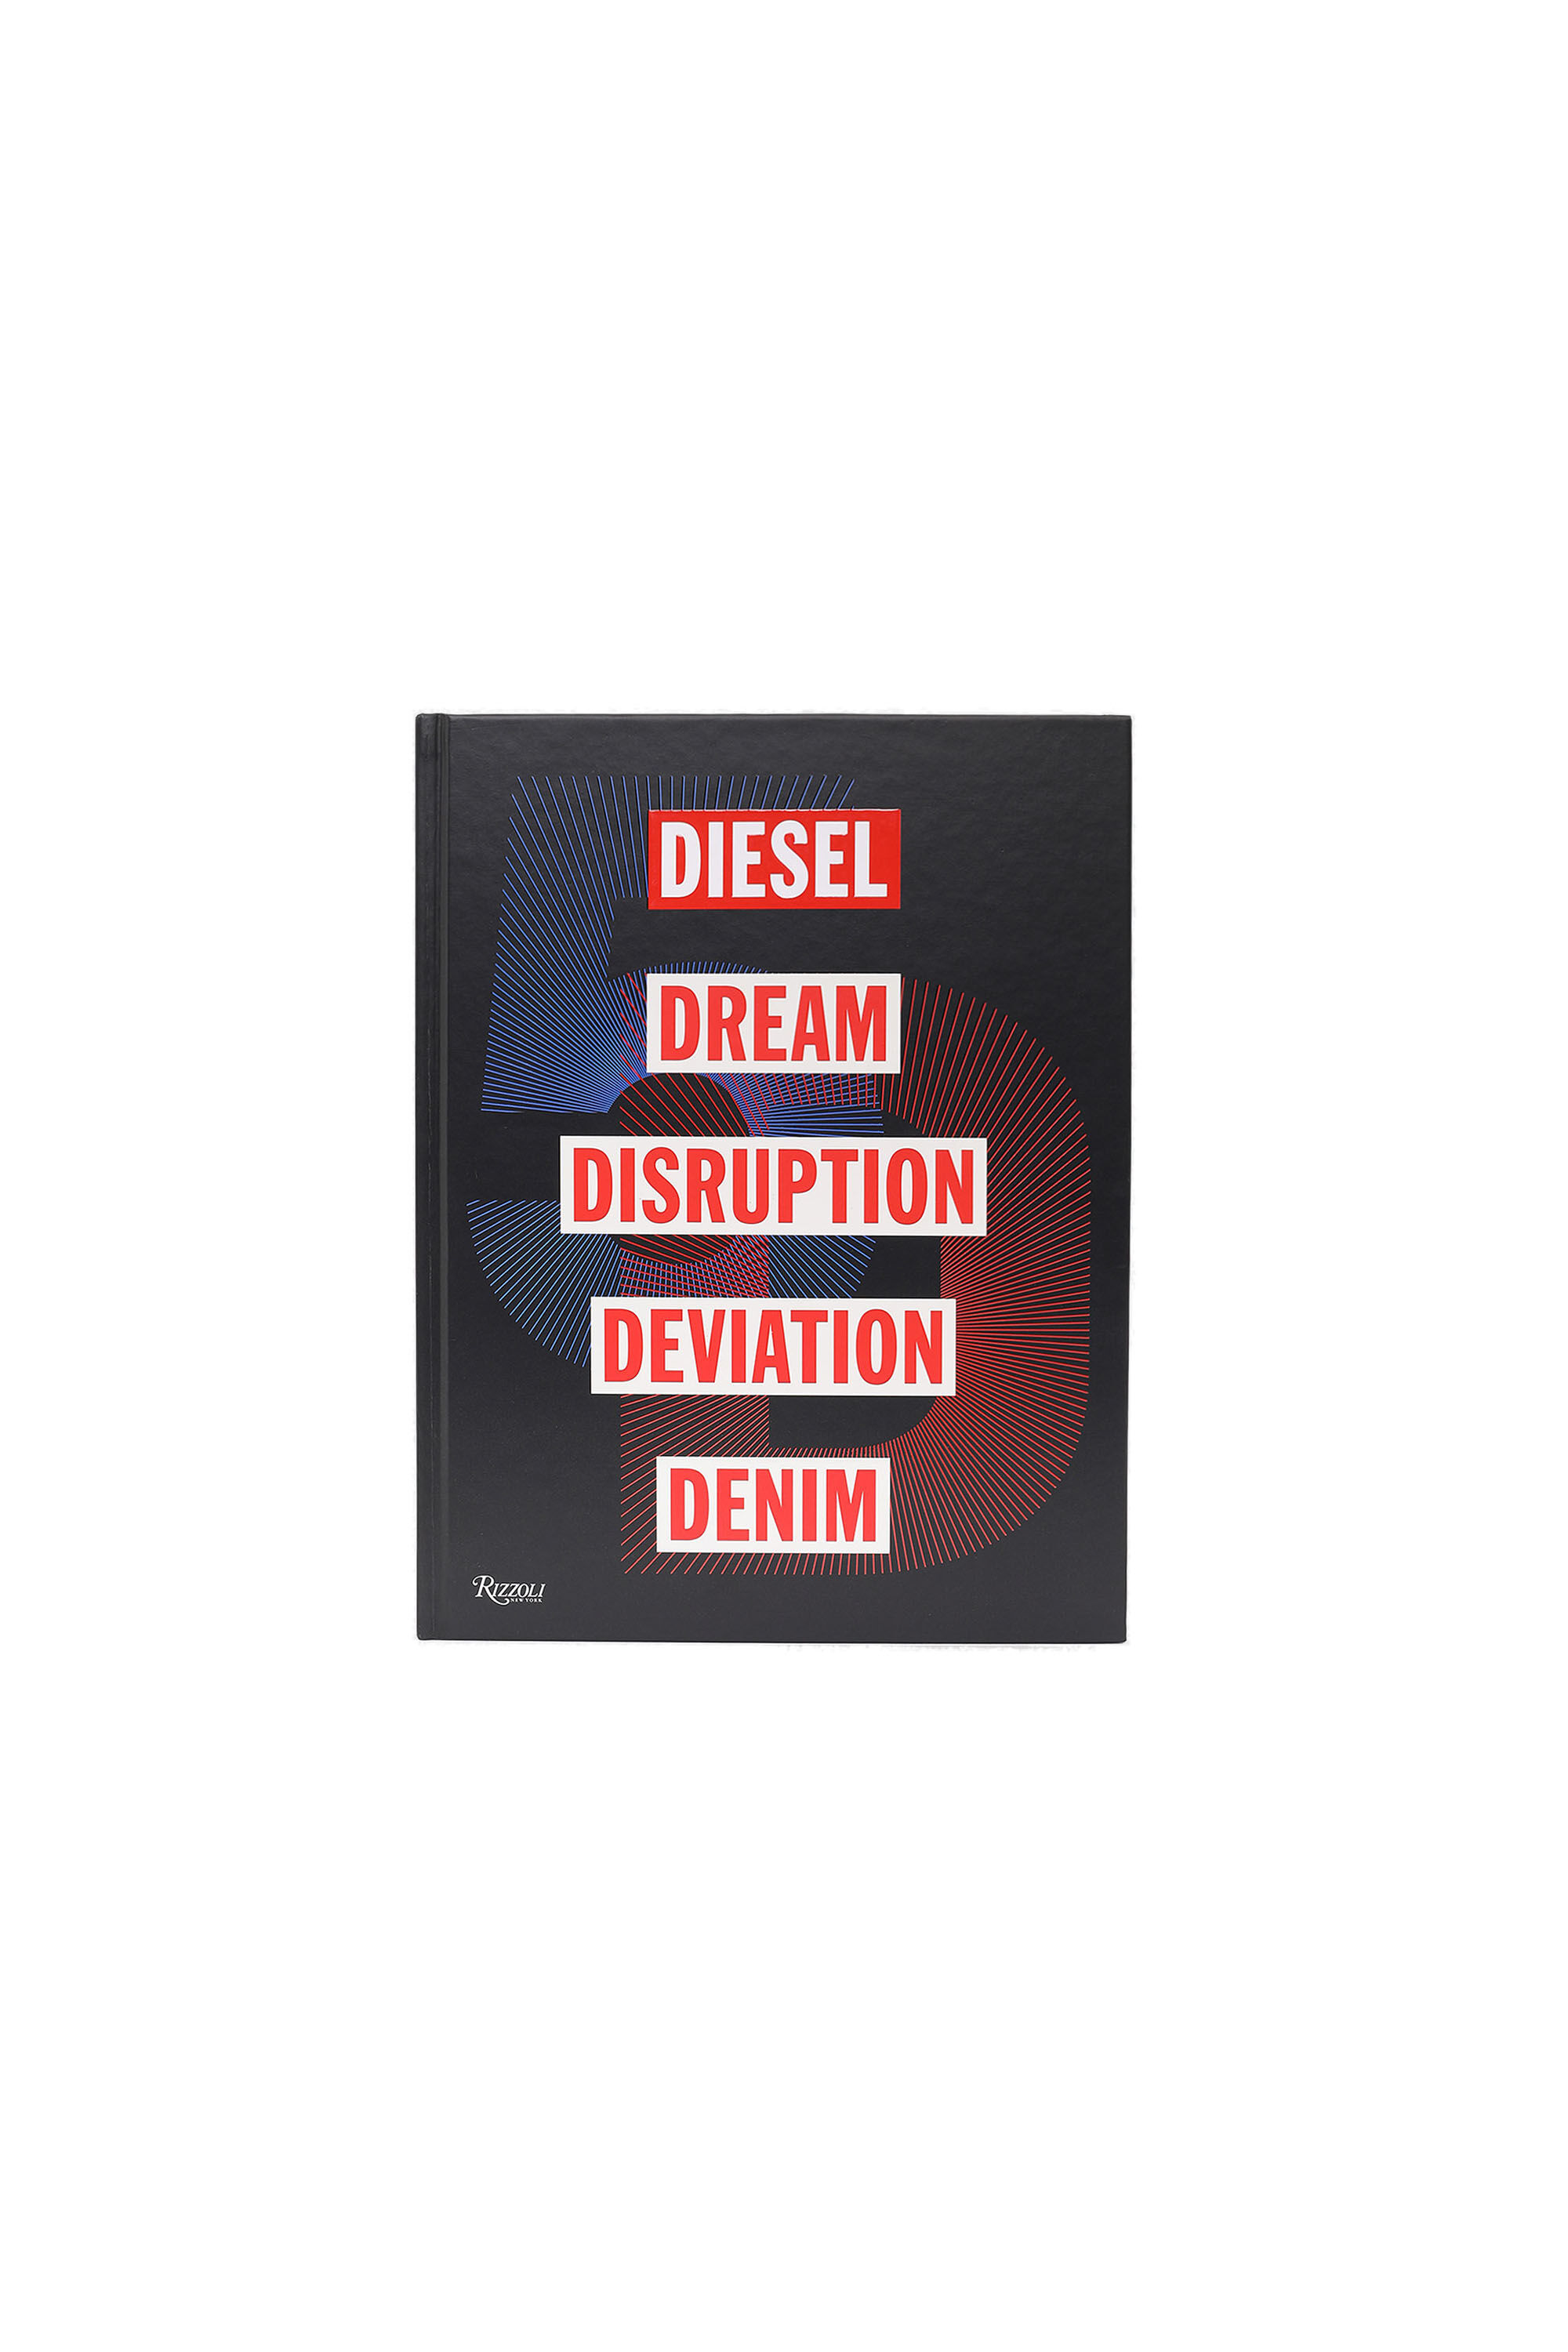 Diesel - 5D Diesel Dream Disruption Deviation Denim,  - Image 1